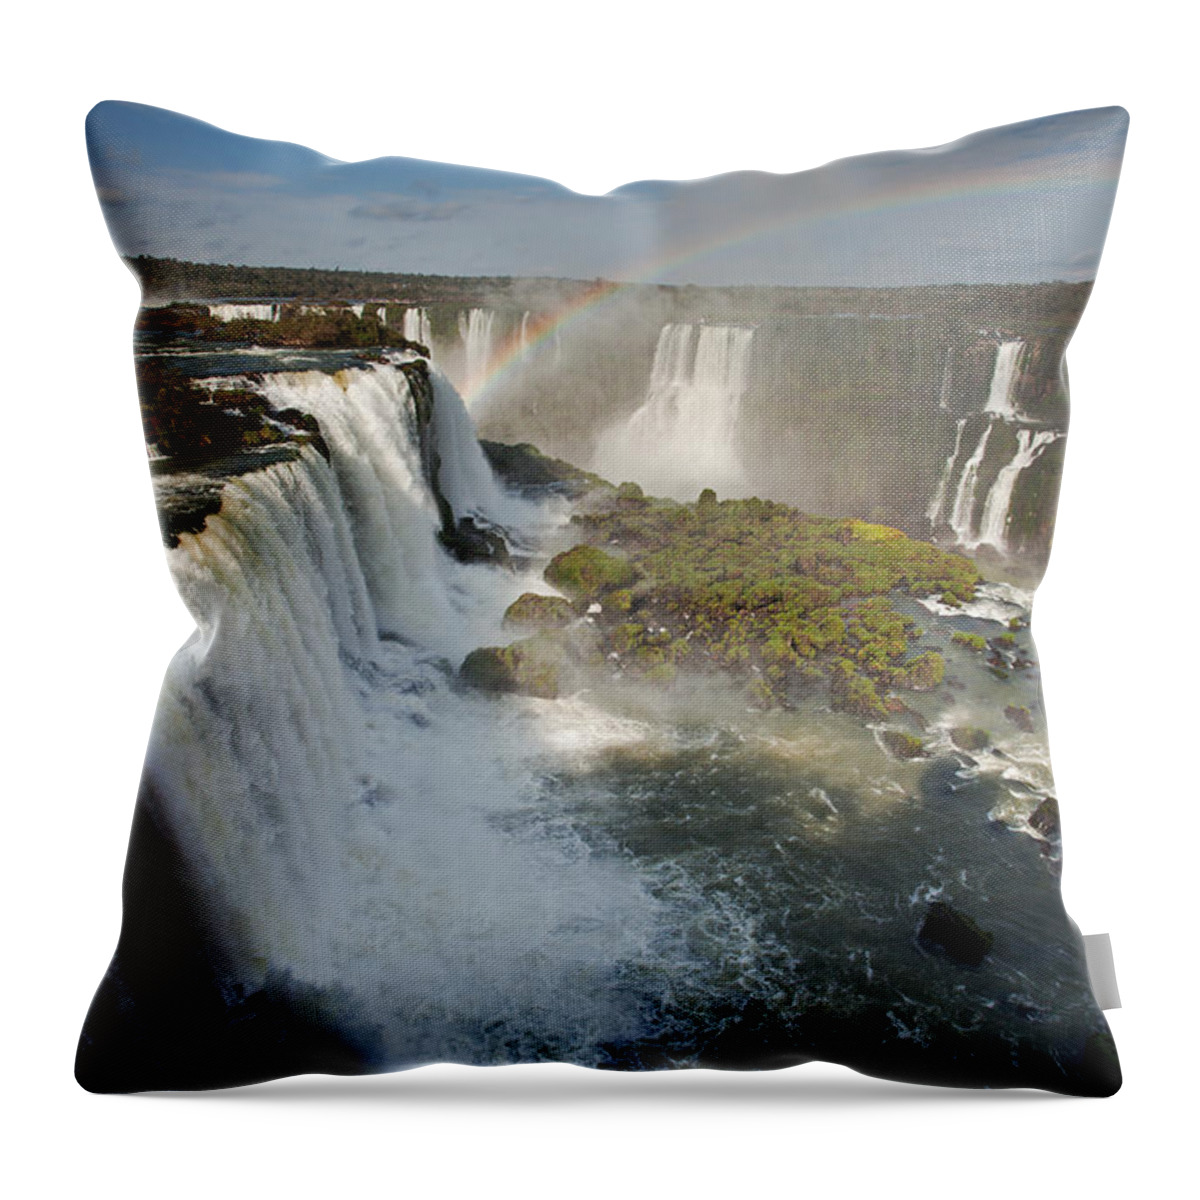 Iguassu Falls Throw Pillow featuring the photograph Upper Iguassu Falls by Aivar Mikko